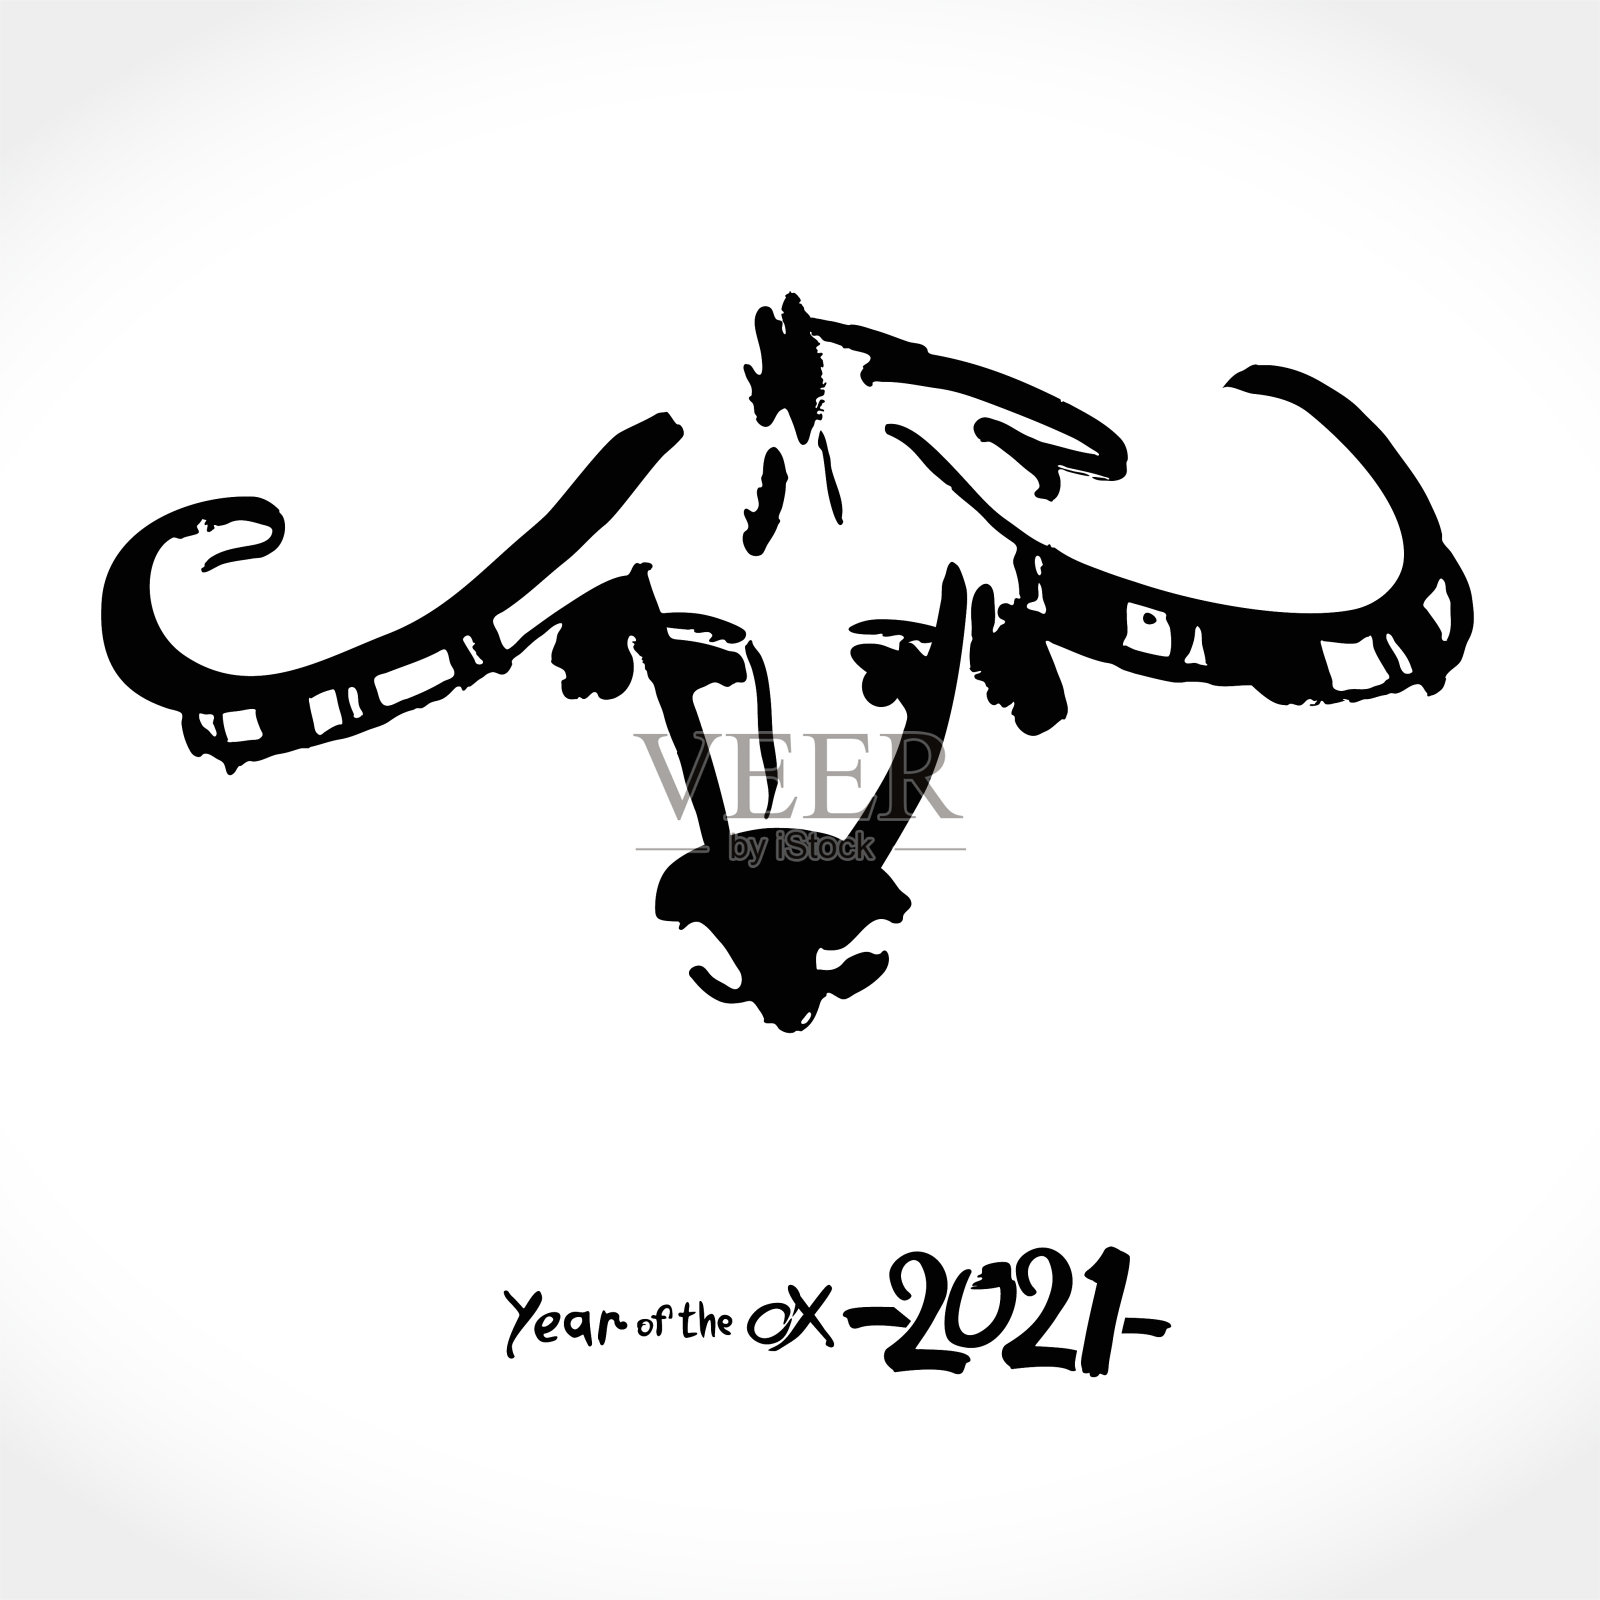 中国的十二生肖是白牛。阴历星座有牛、牛、牛。2021年春节快乐。黑色水墨毛笔书法符号的2021年。插画图片素材